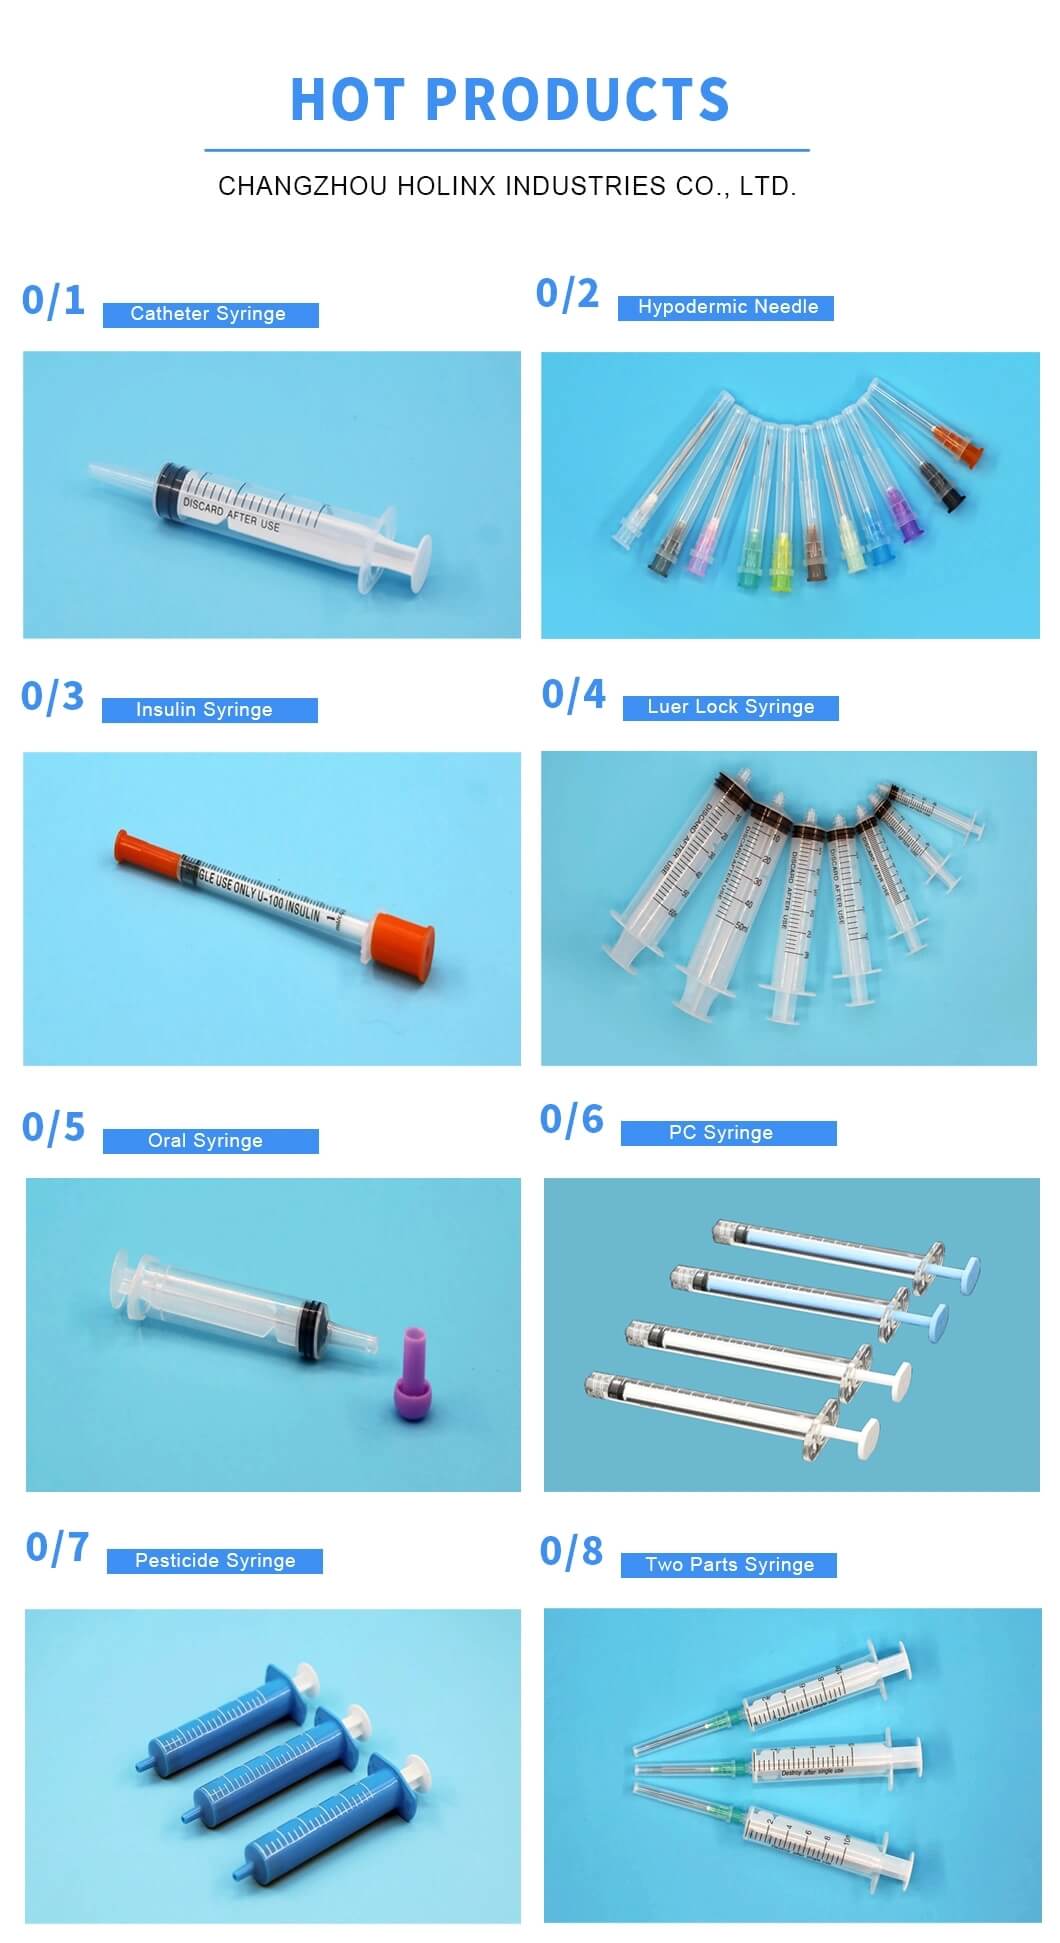 5ml Luer Lock Syringe without Needle